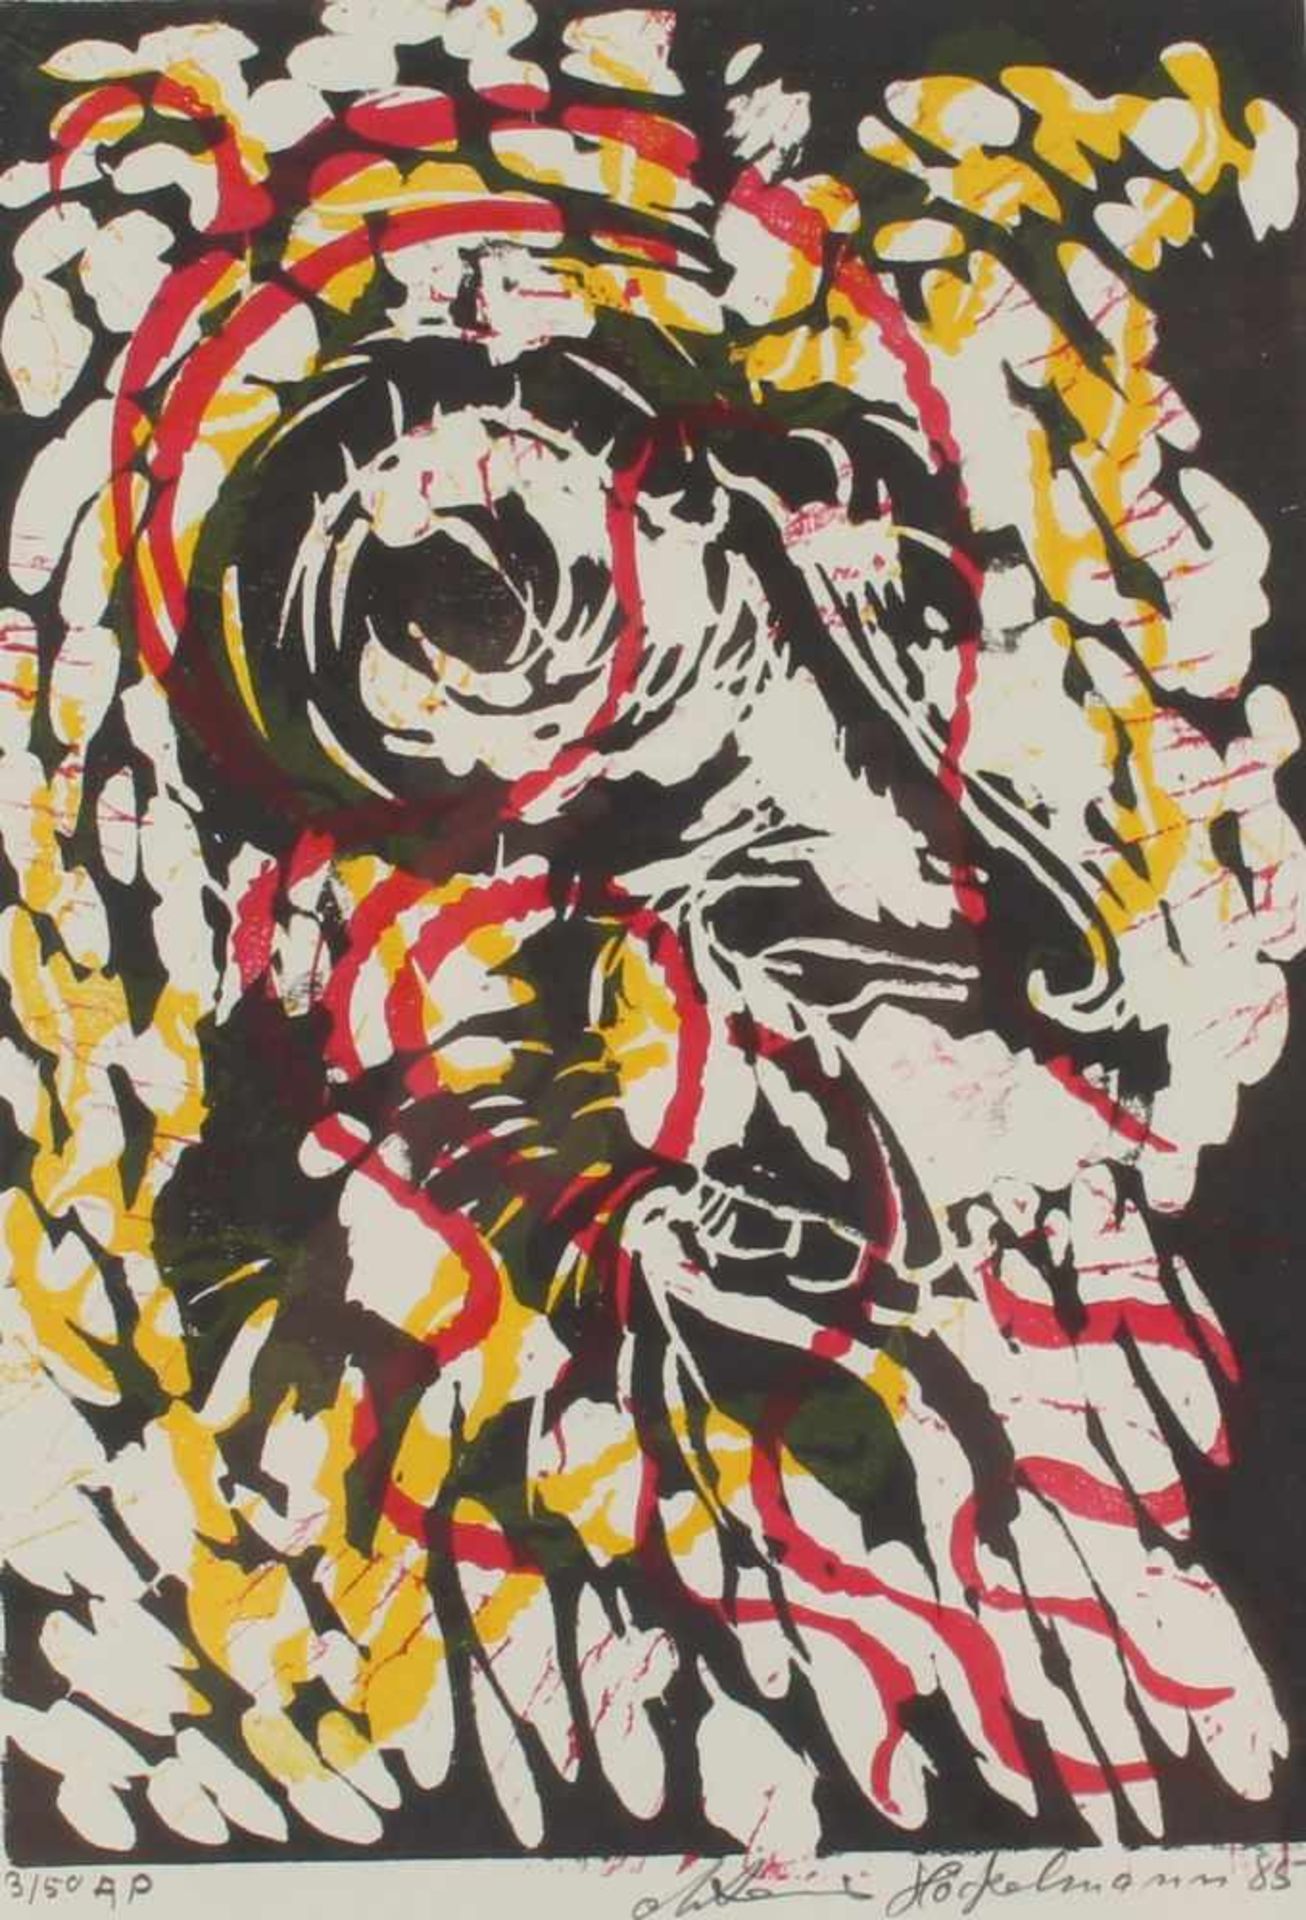 Anton HÖCKELMANN (1937-2000) Linolschnitt abstrakte Komposition,Linolschnitt auf Büttenpapier,